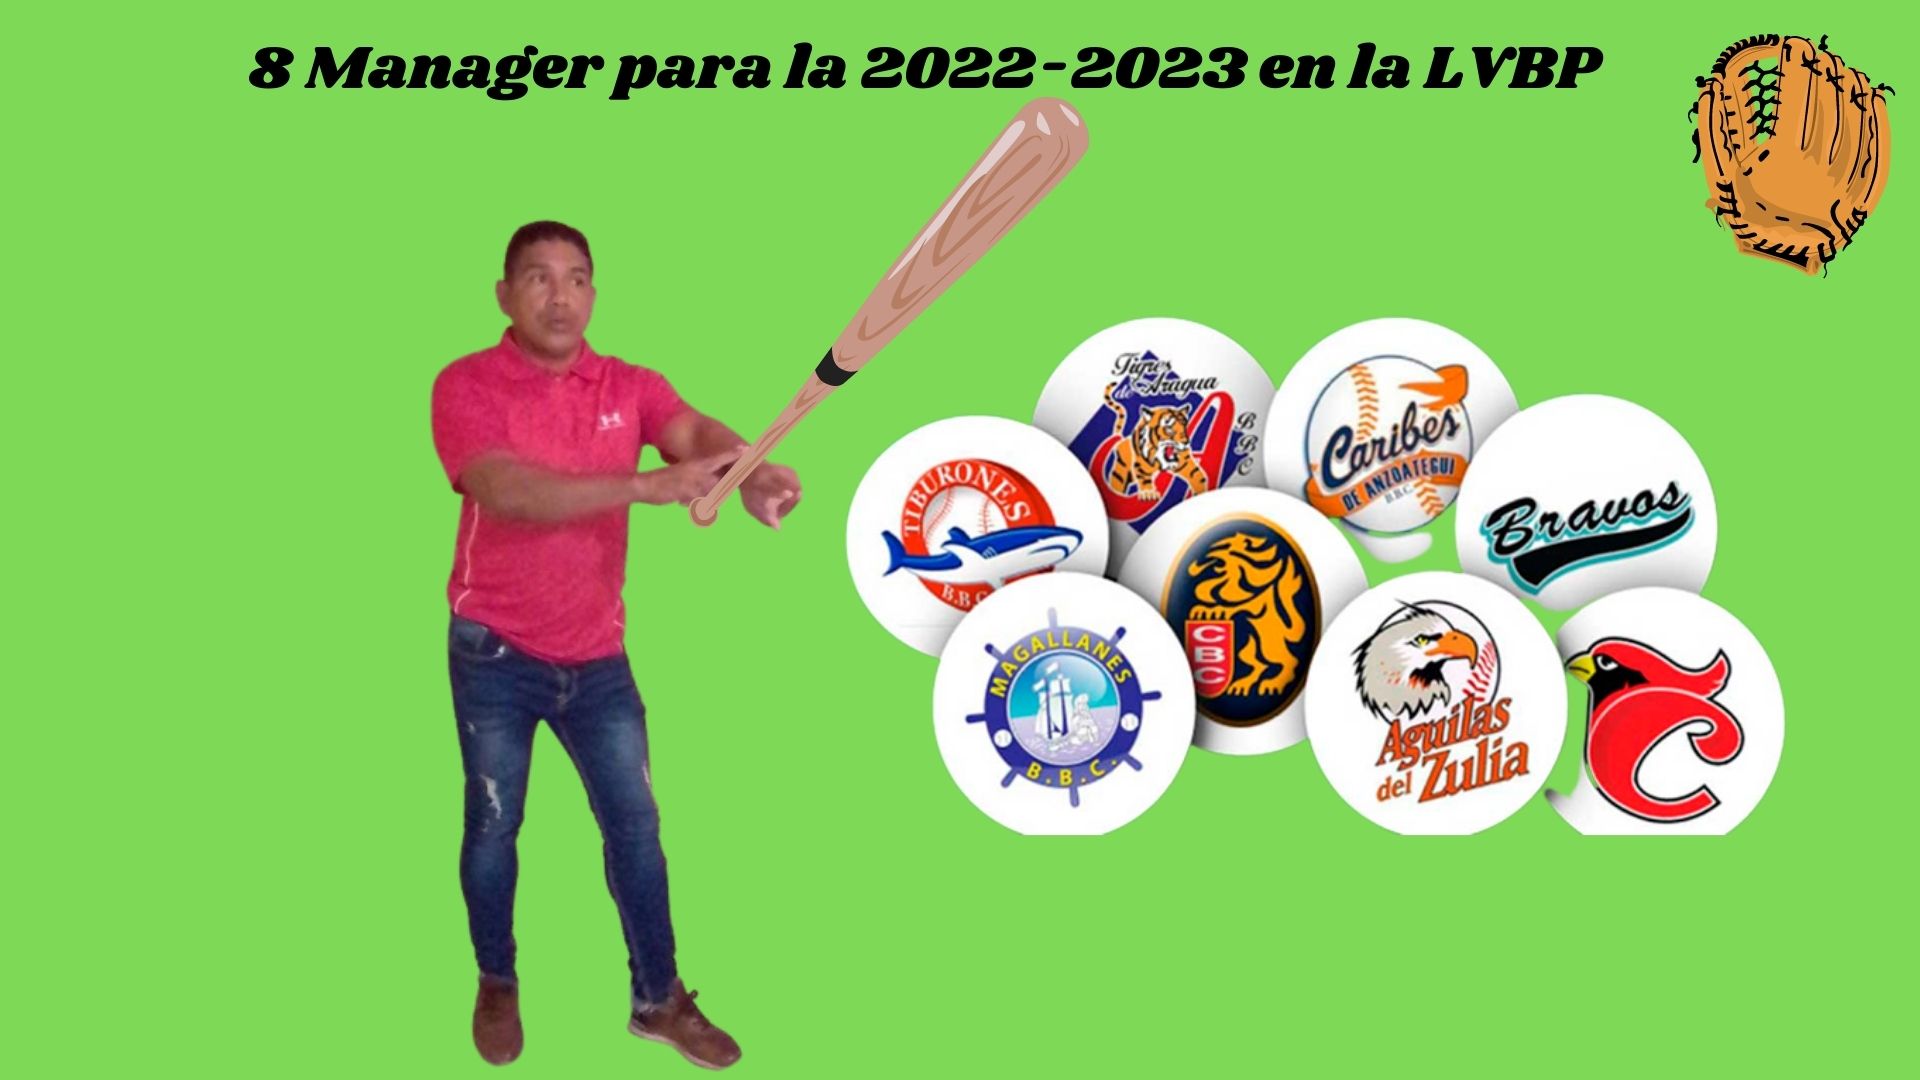 8 Manager para la 2022-2023 en la LVBP.jpg